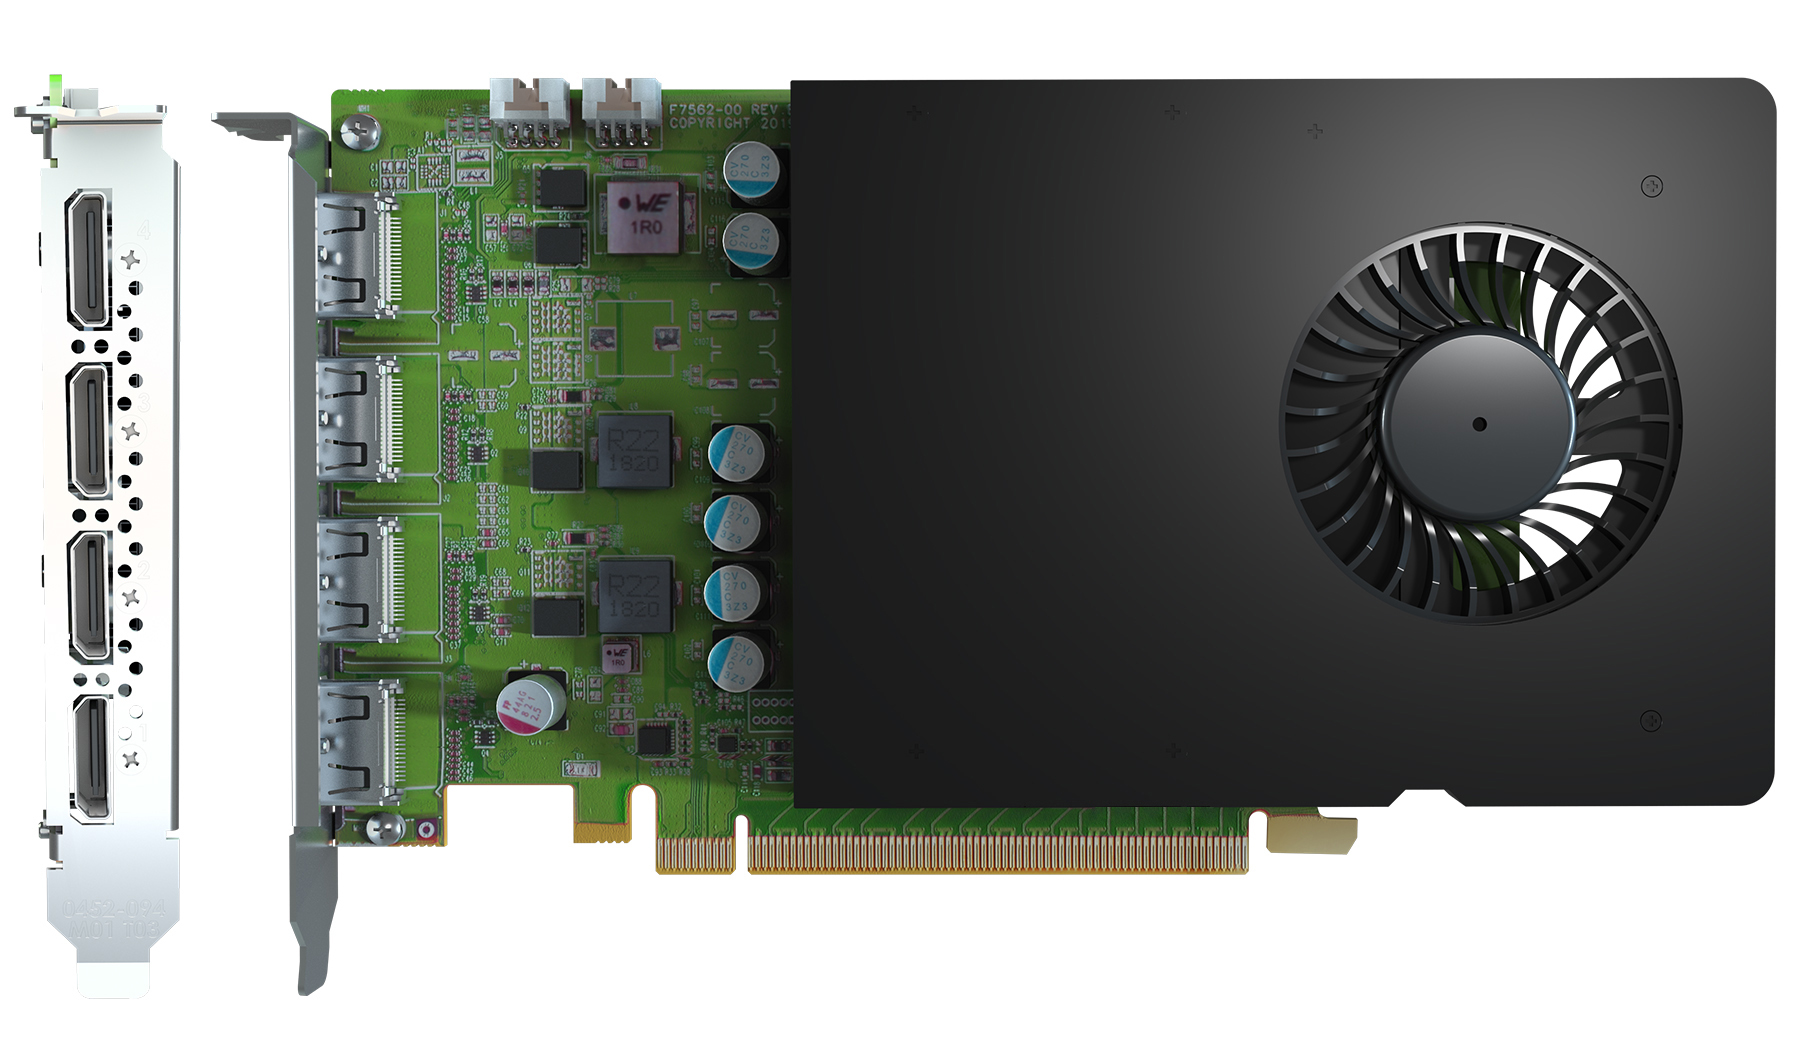 Matrox D-Series D1450 Quad HDMI Graphics Card / D1450-E4GB